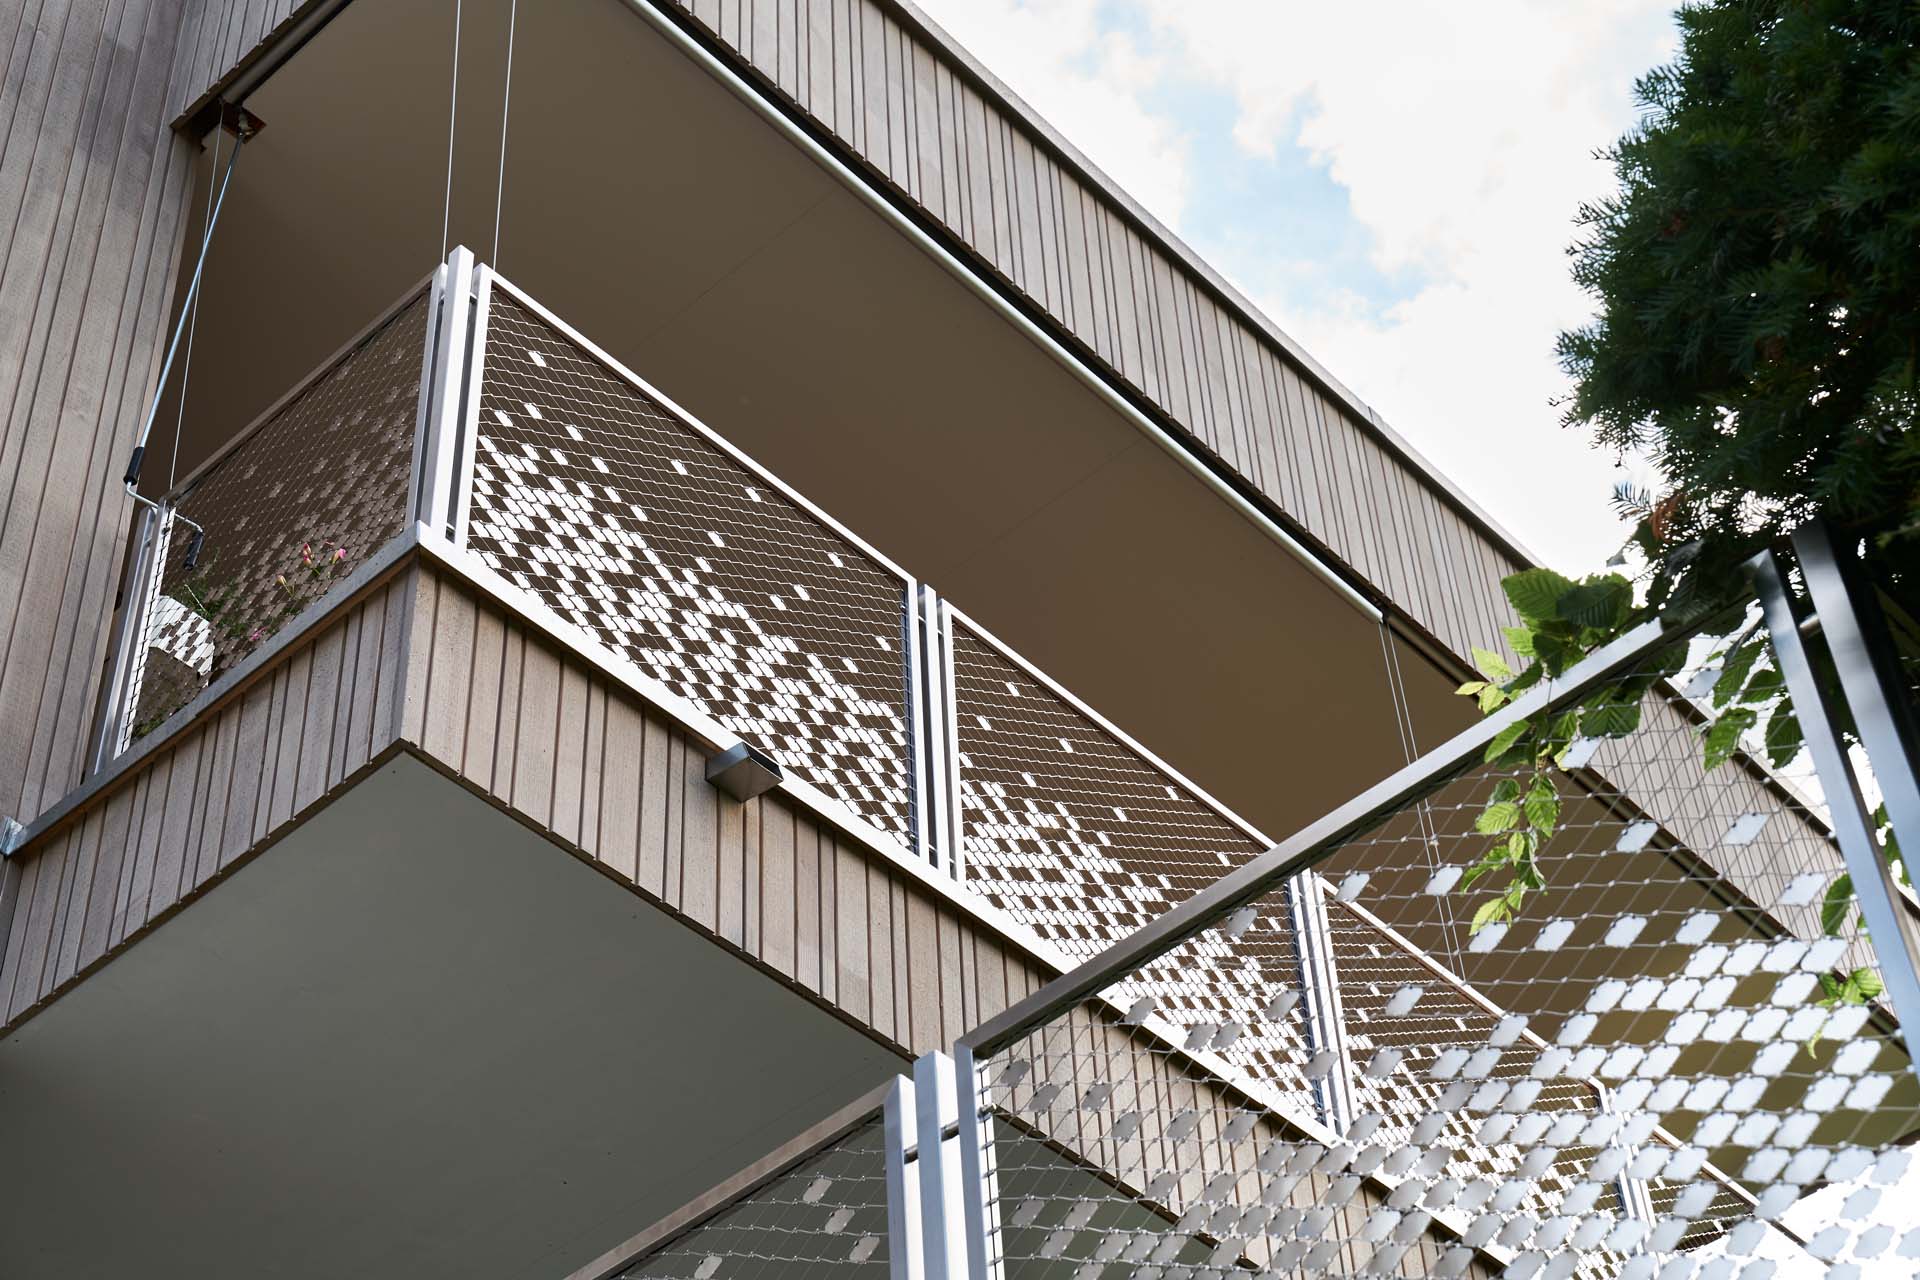 WebnetID balcony railing in Ittigen